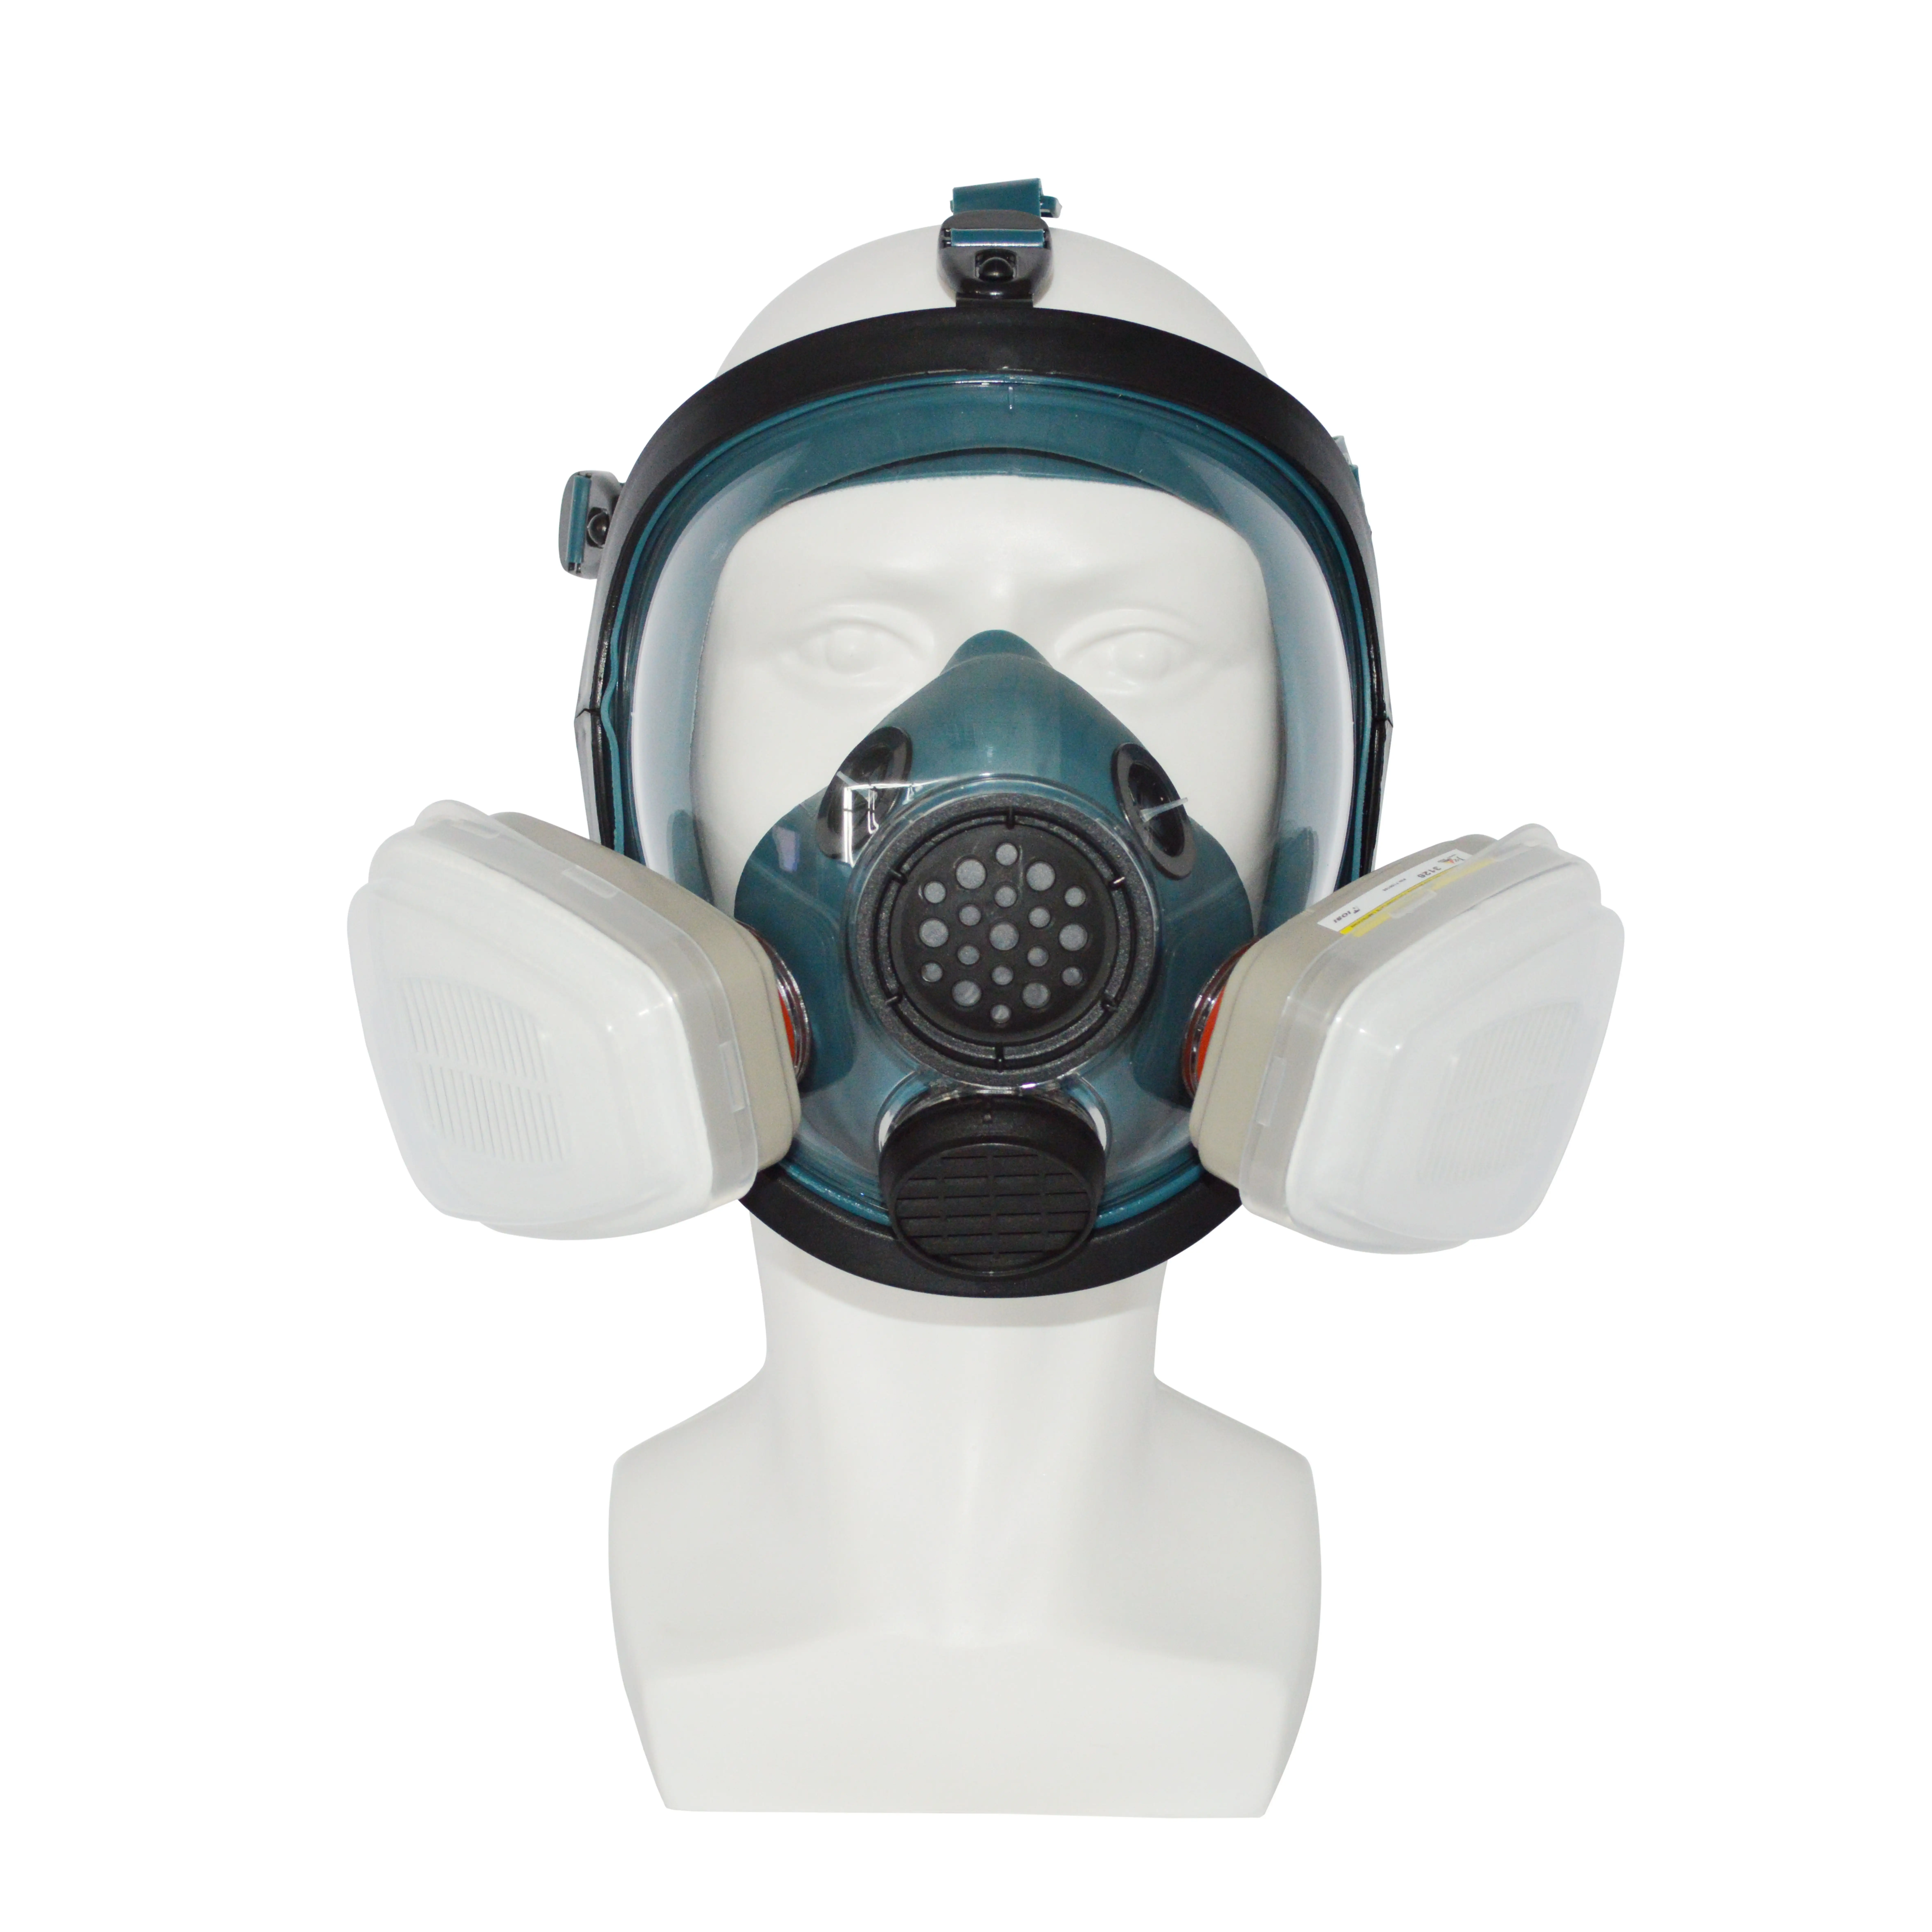 Máscara de gás para rosto inteiro com filtro duplo, filtro de alta qualidade para fumaça e partículas, adequado para muitas ocasiões